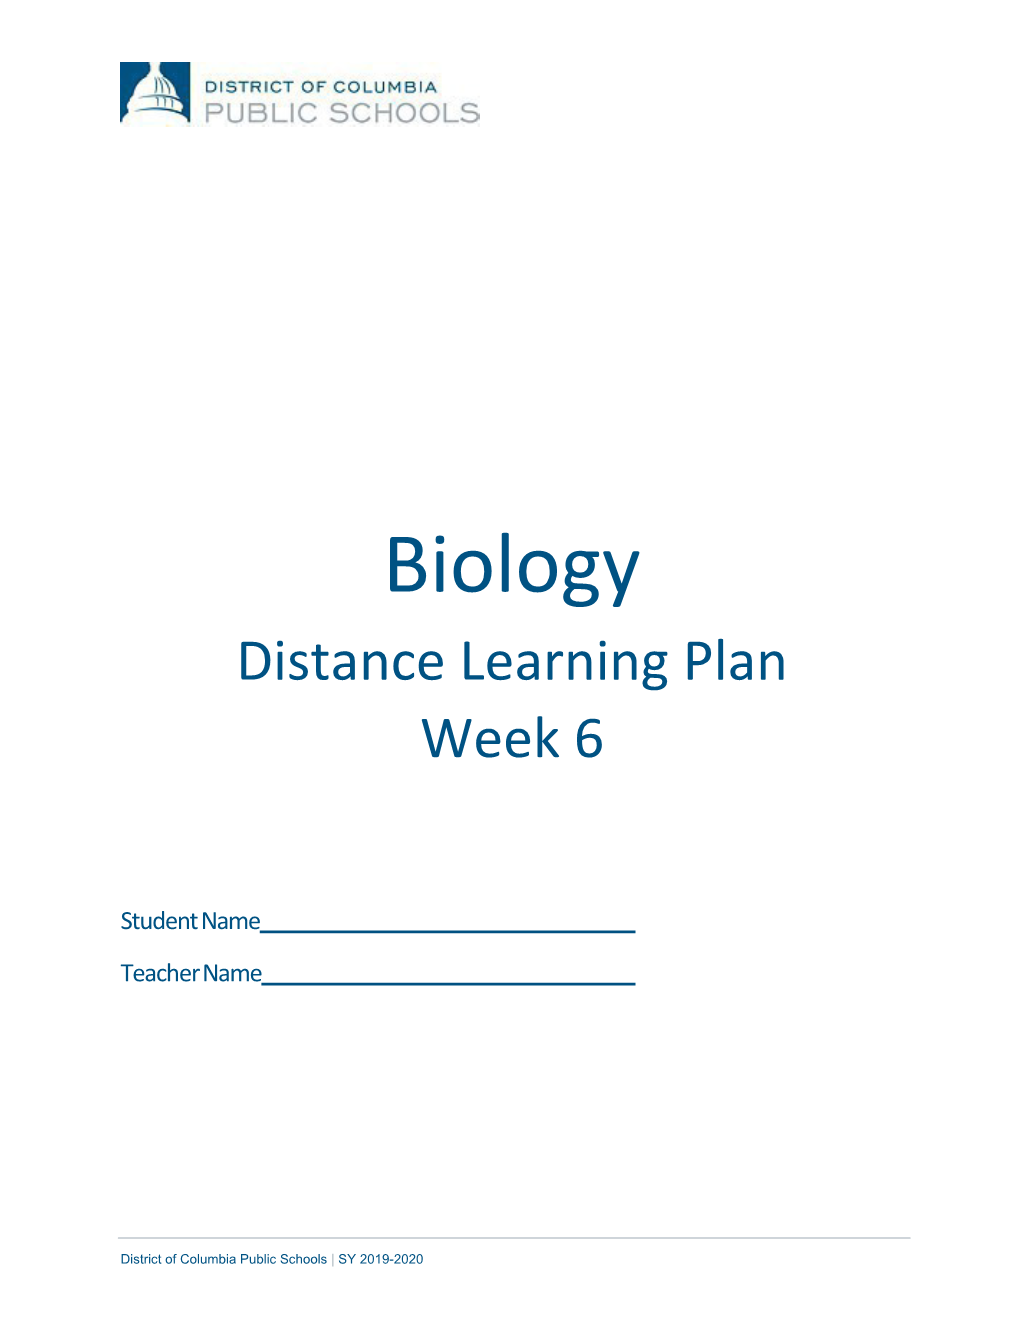 Biology Distance Learning Plan Week 6